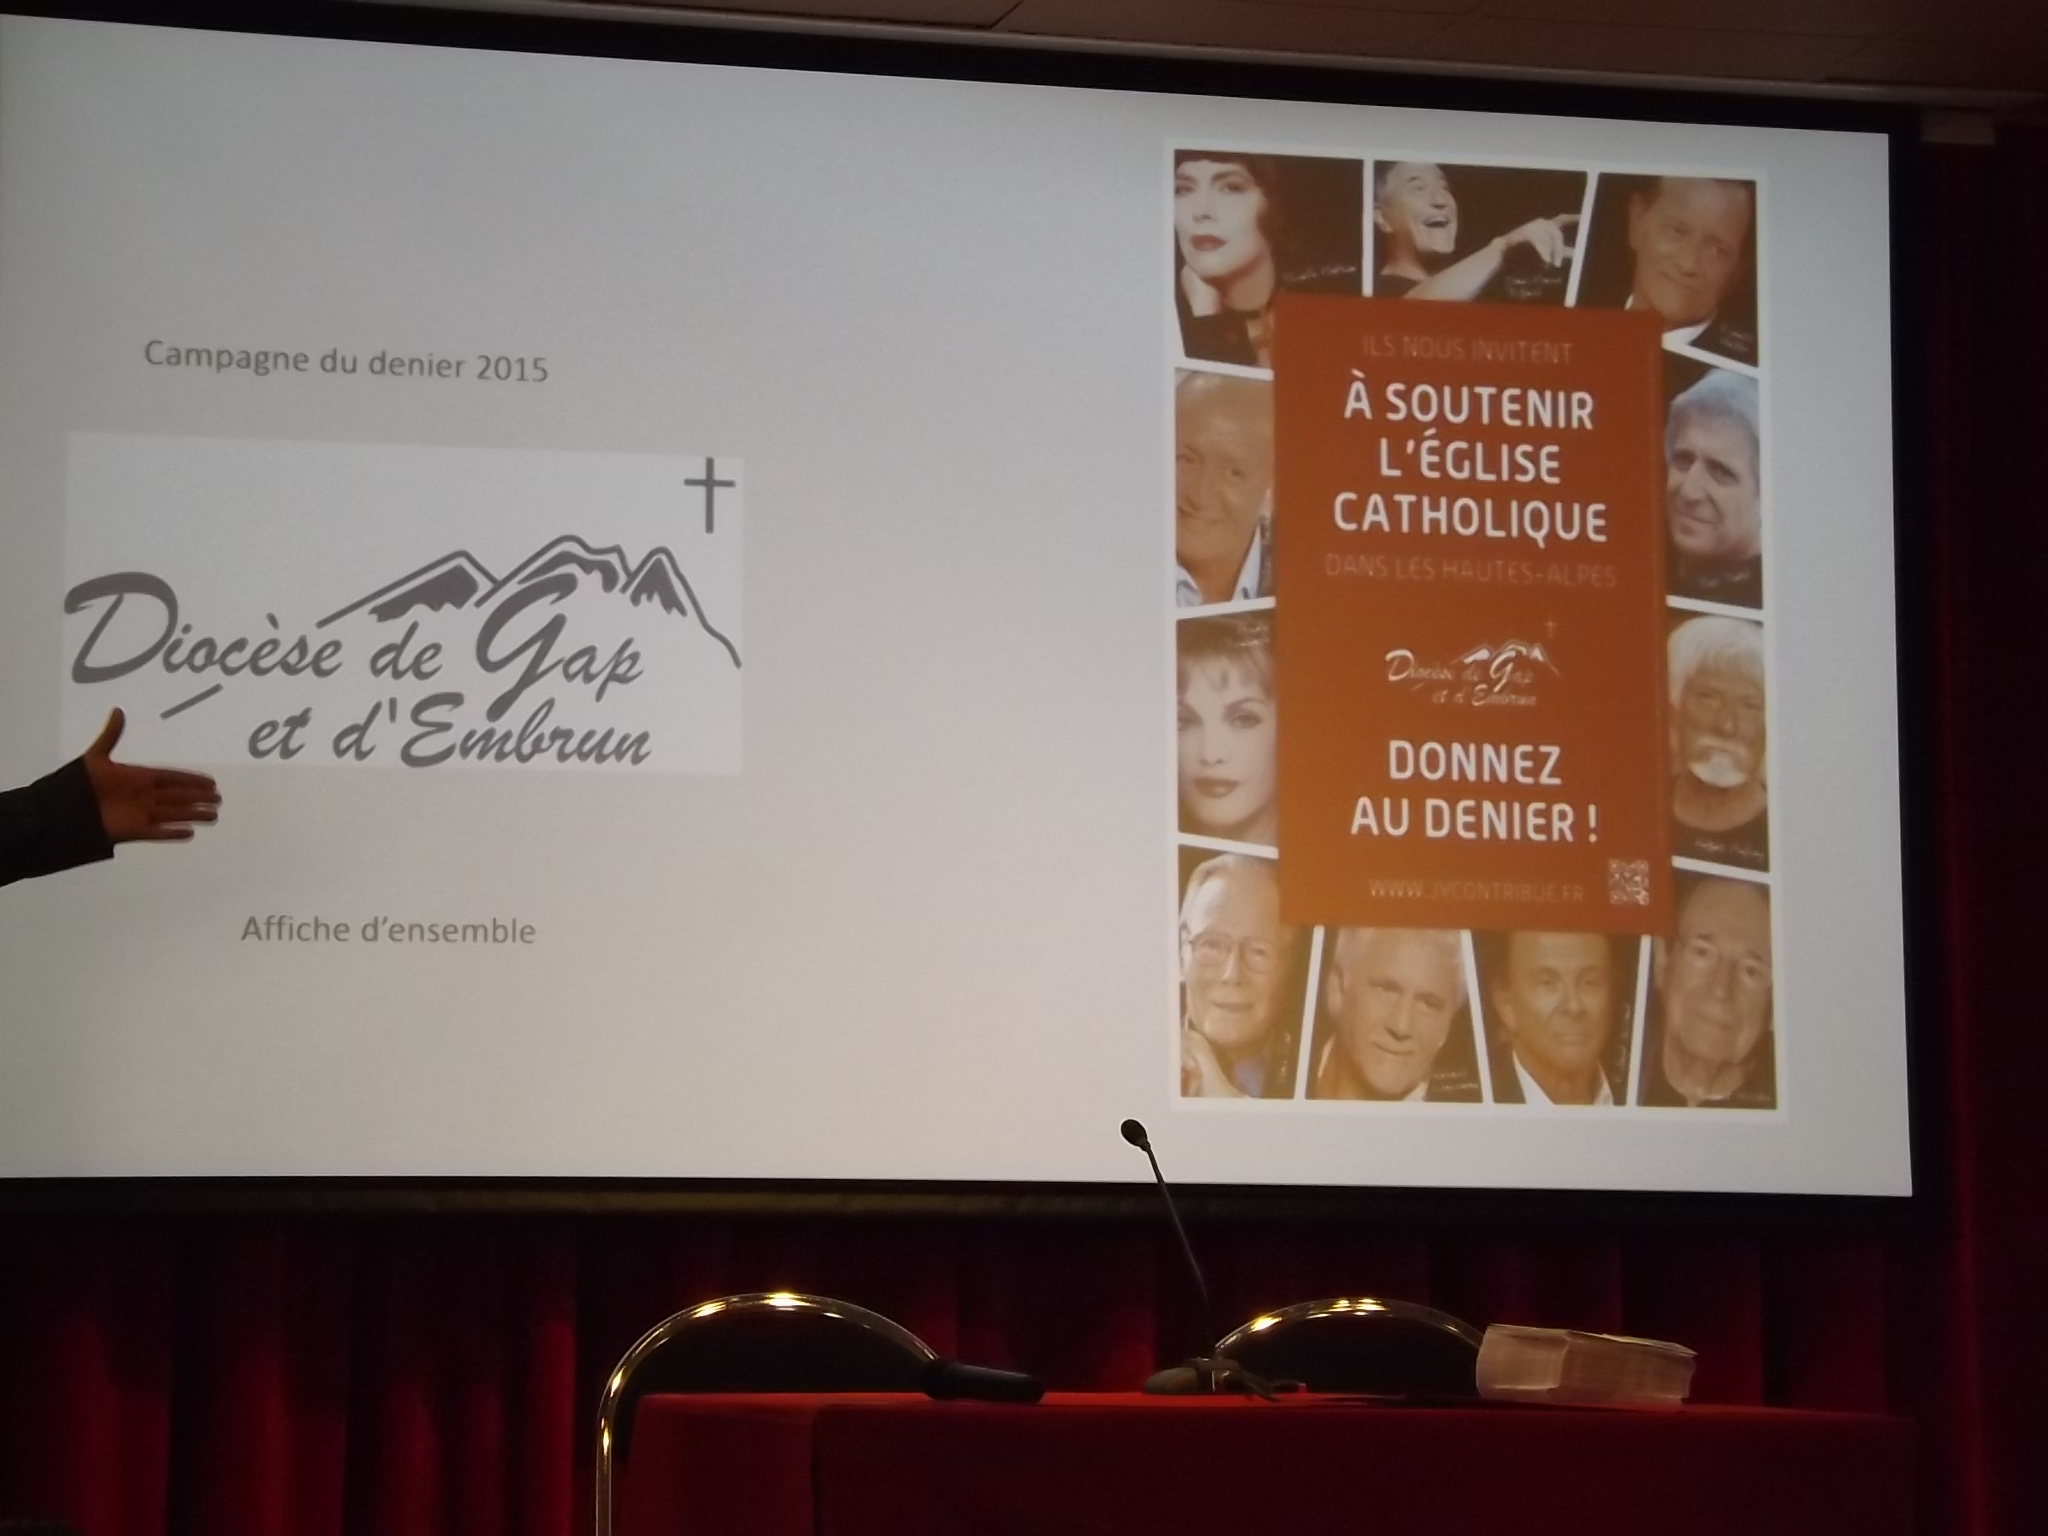 La campagne du denier de l’Eglise est lancée dans les Hautes-Alpes.